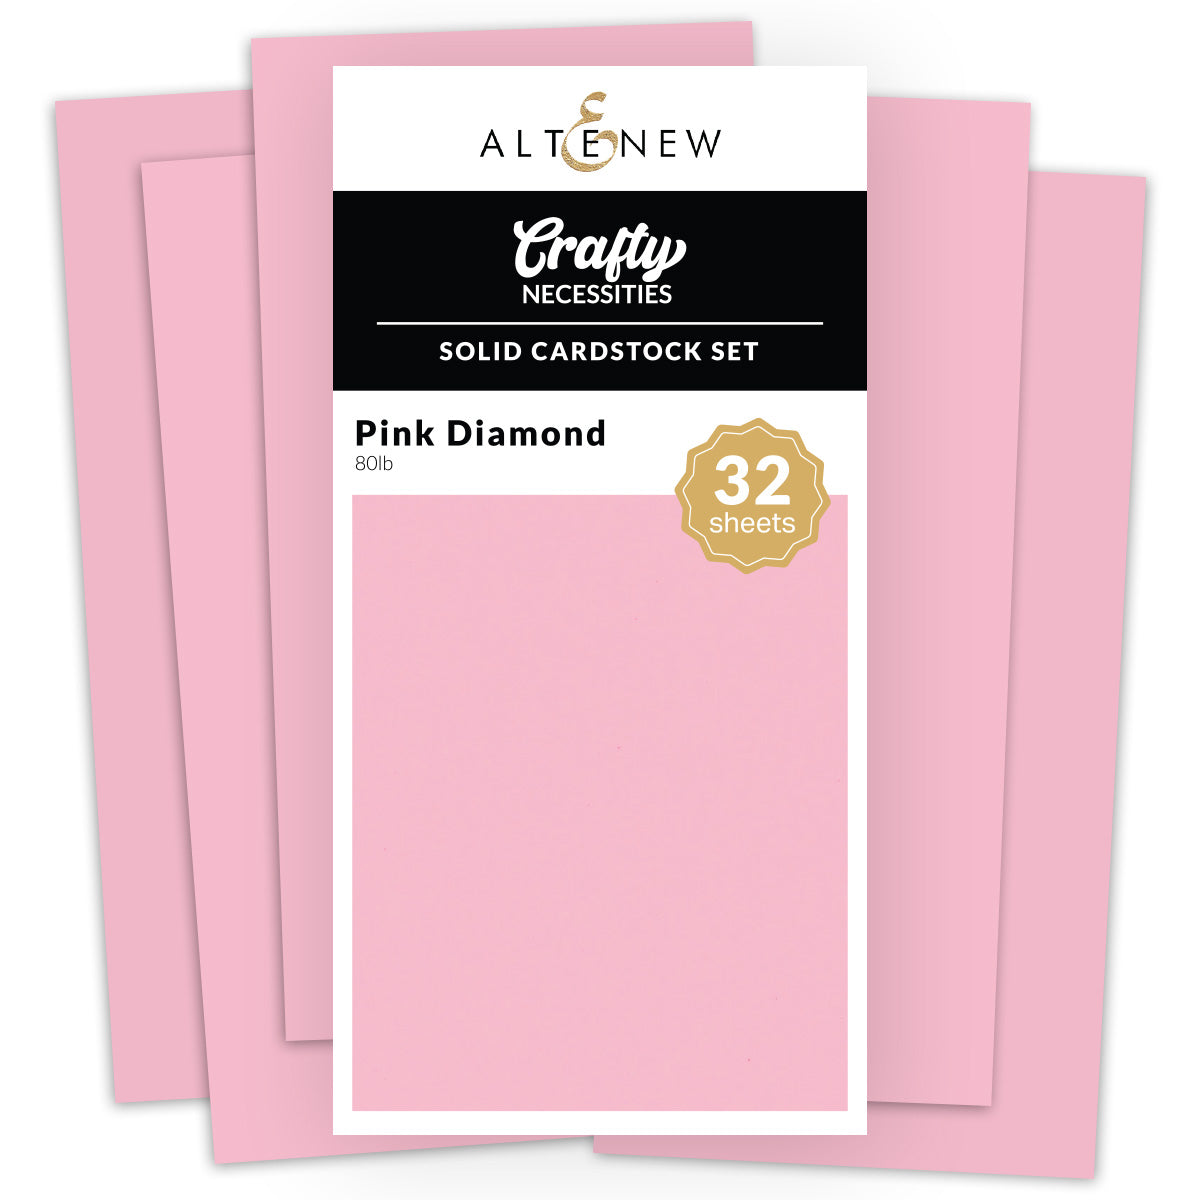 Cardstock Solid Cardstock Set - Pink Diamond (32 sheets/set)